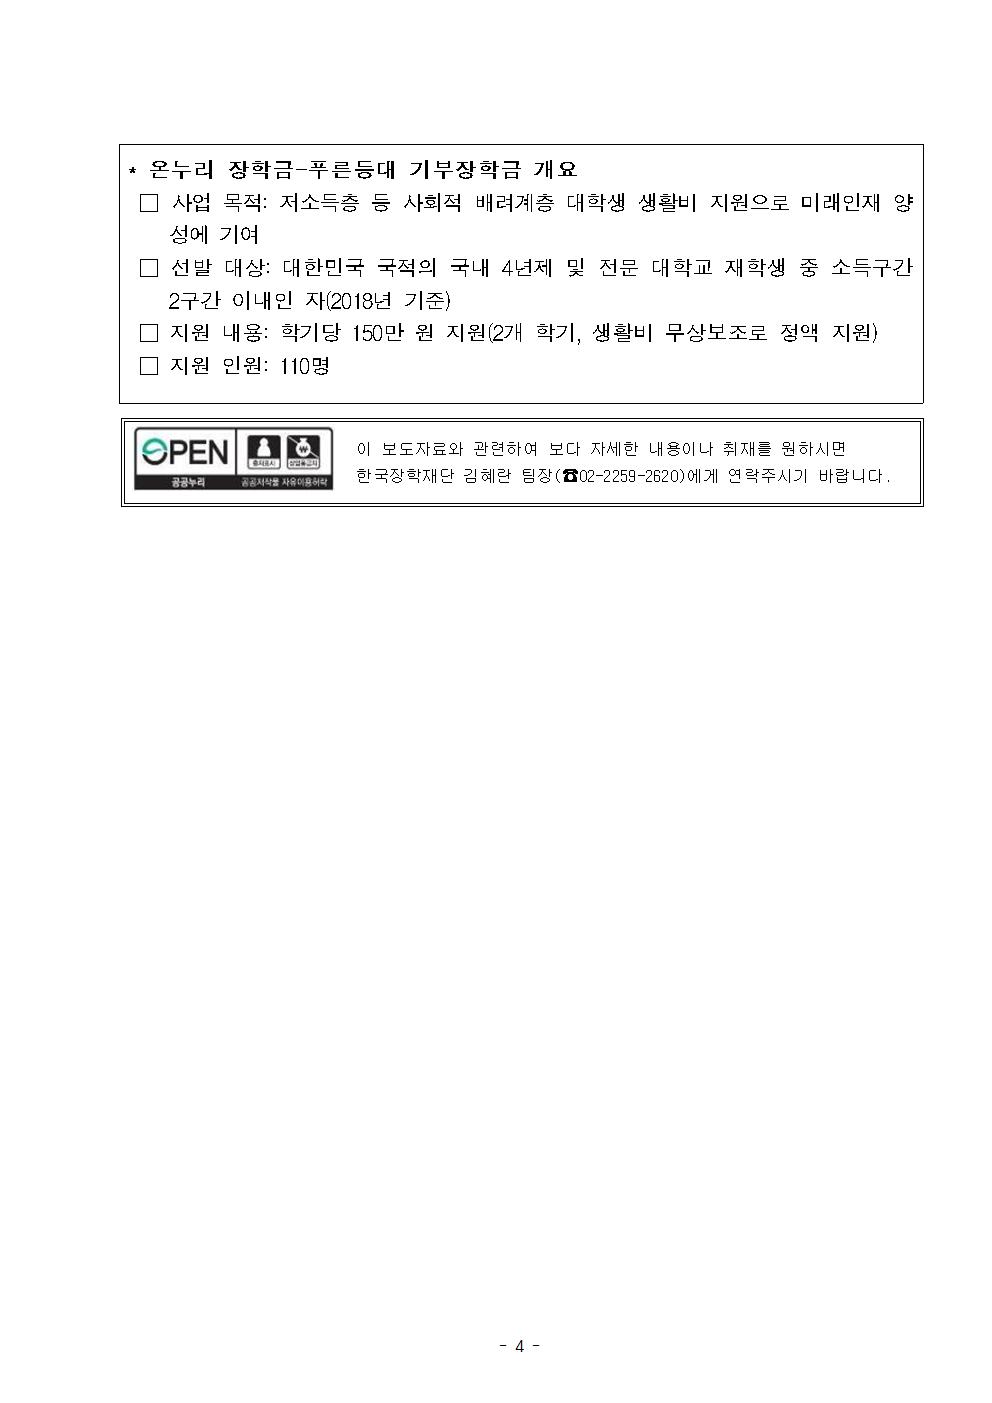 11-27(화)[보도자료] (한국장학재단-한국가스공사) 푸른등대 기부장학금 기탁식 개최004.jpg